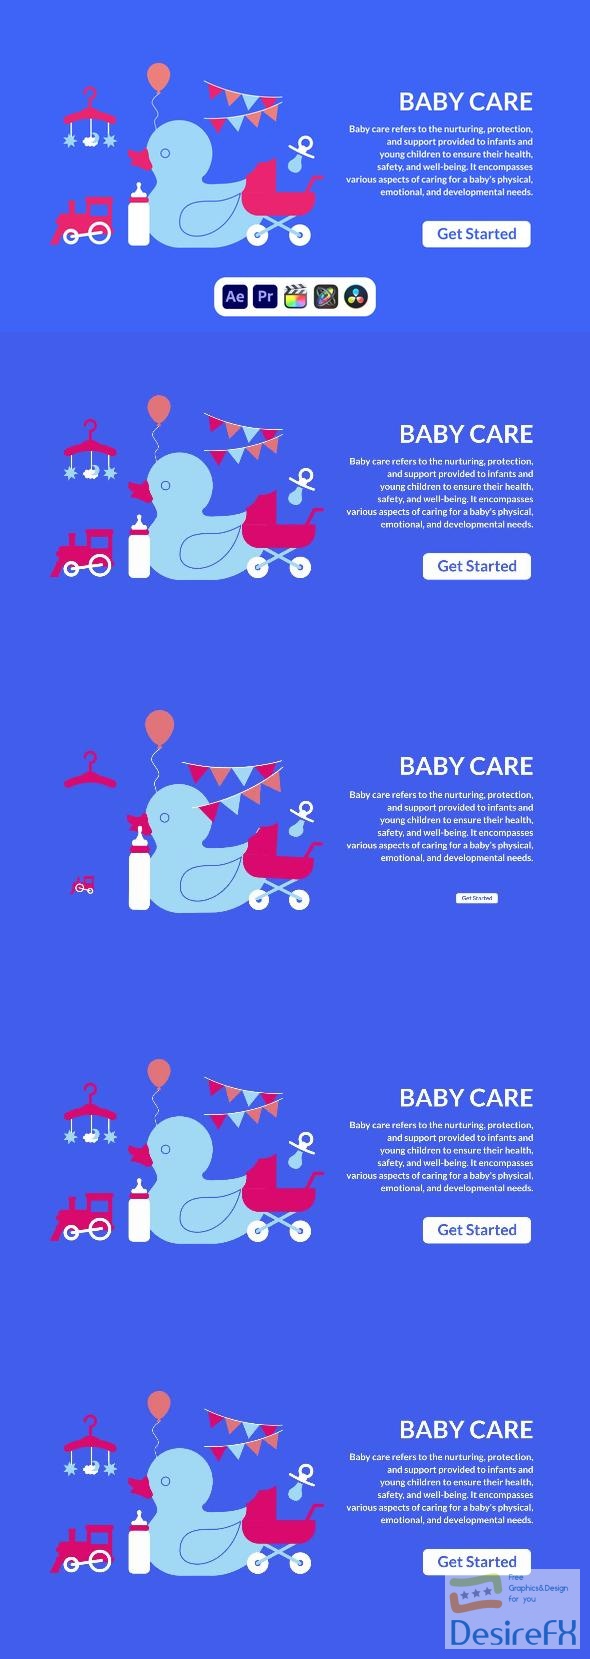 VideoHive Baby Care Design Concept 50690311